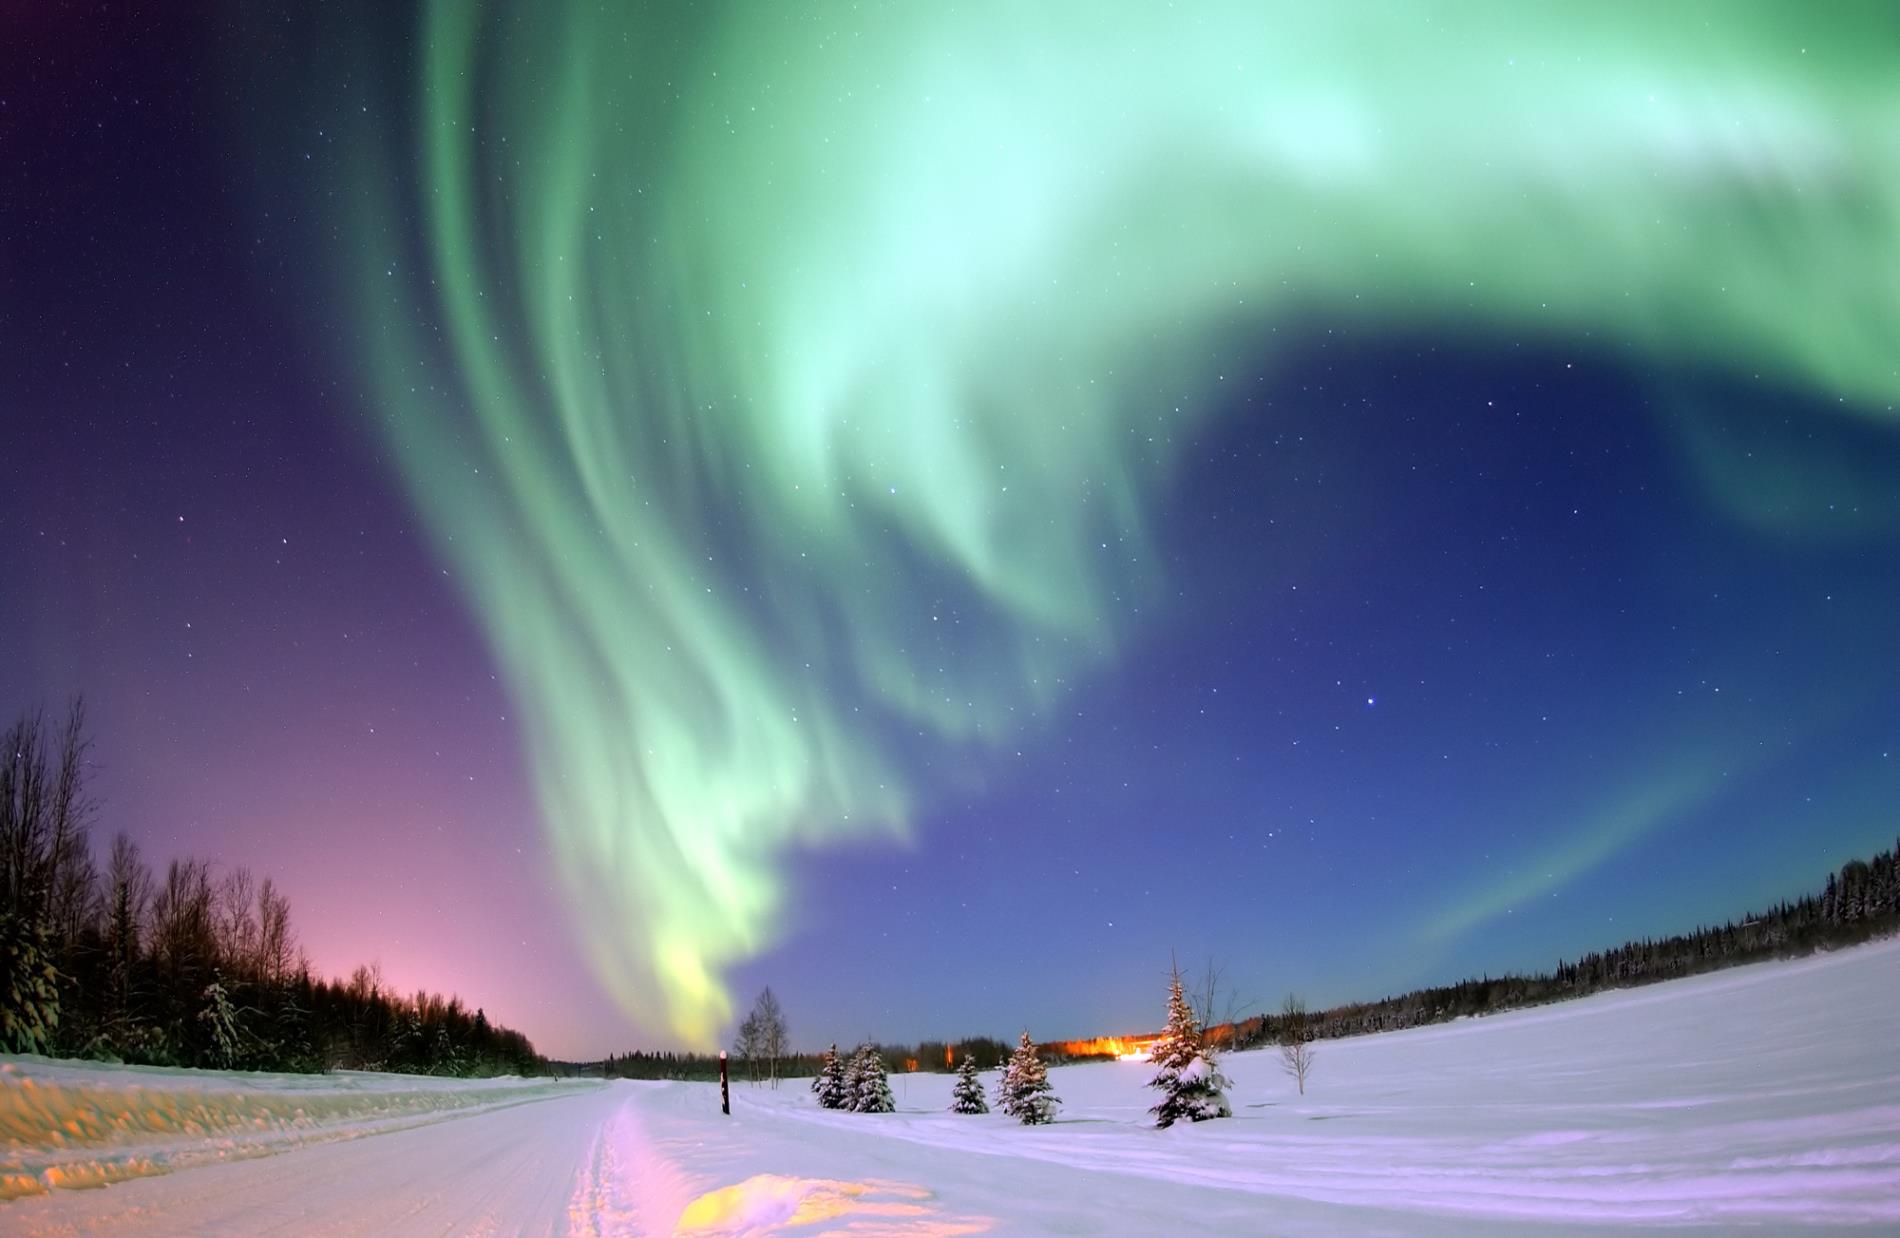 Capodanno, inseguendo l'aurora boreale